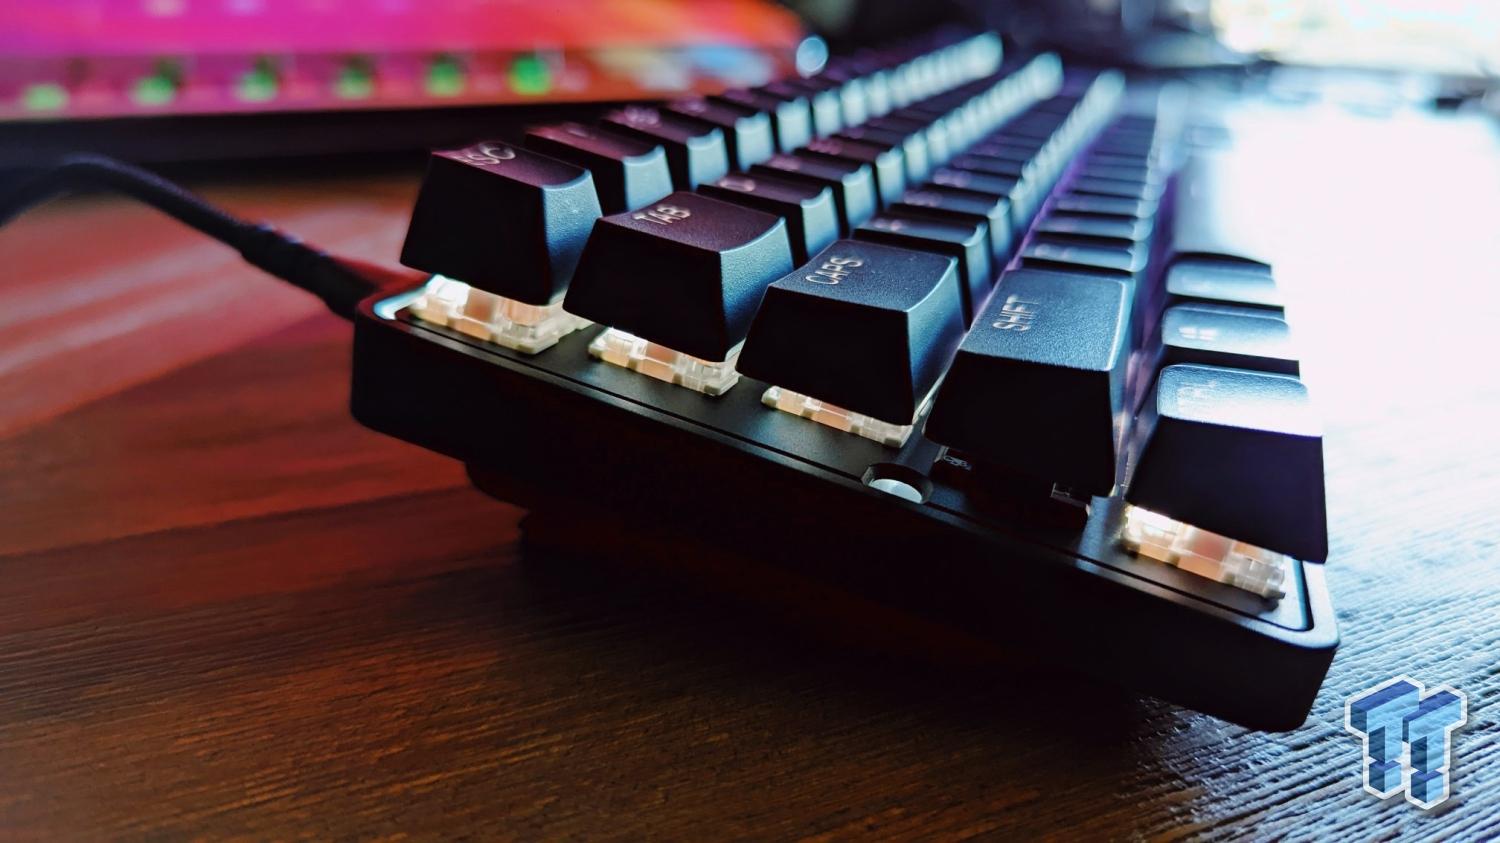 SteelSeries Apex 9 Mini Keyboard Review